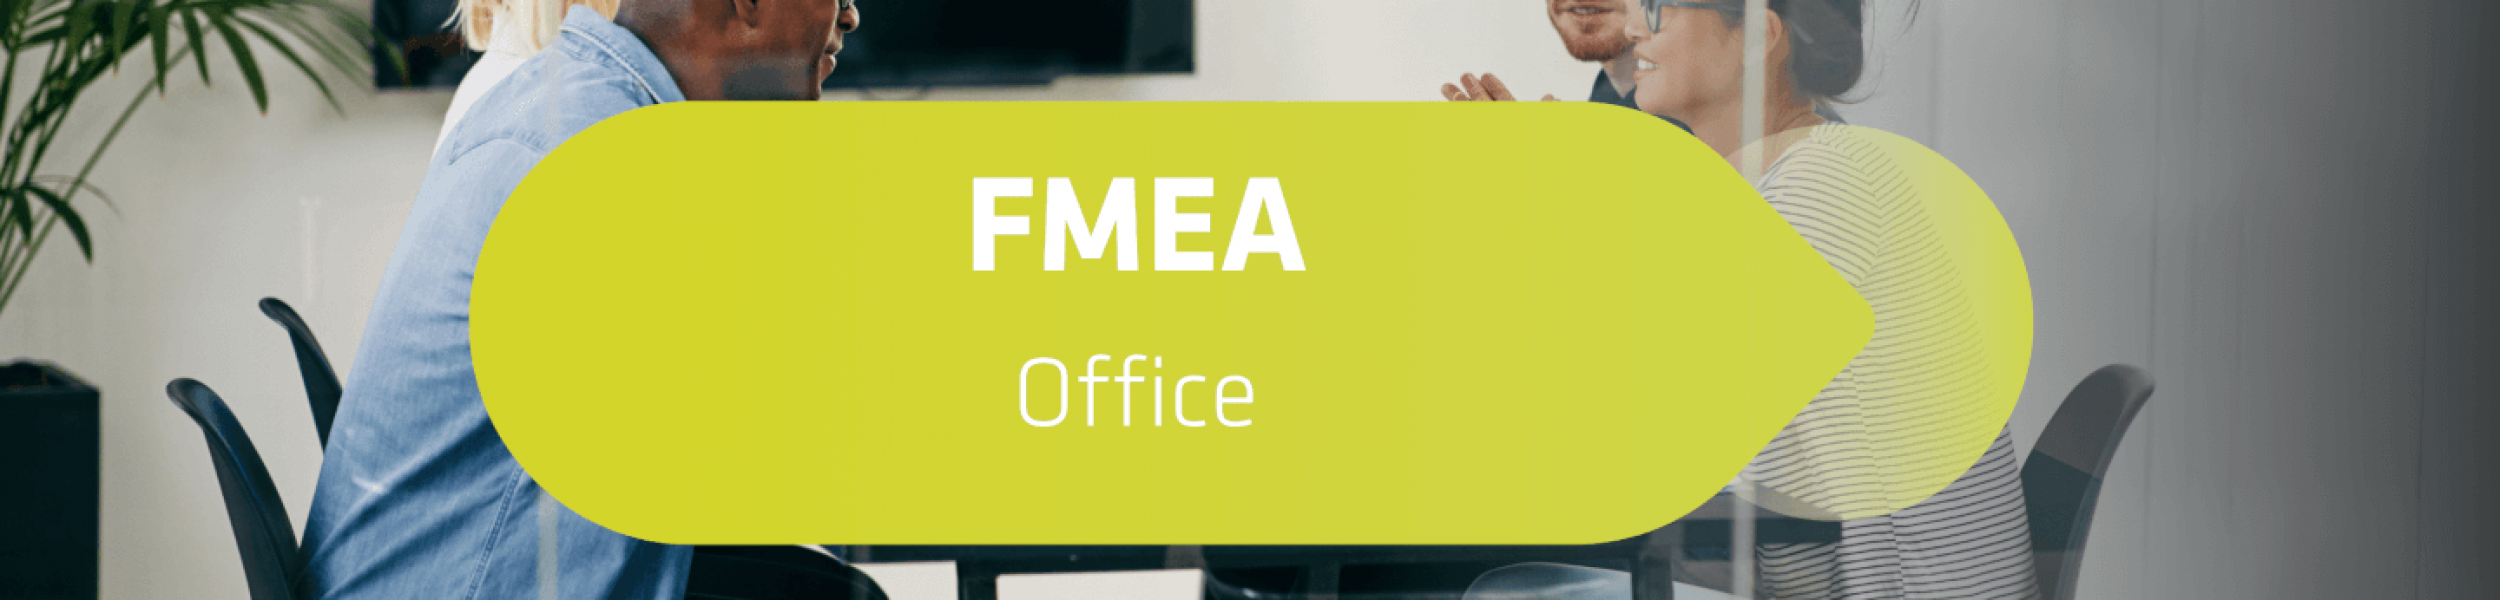 FMEA Office